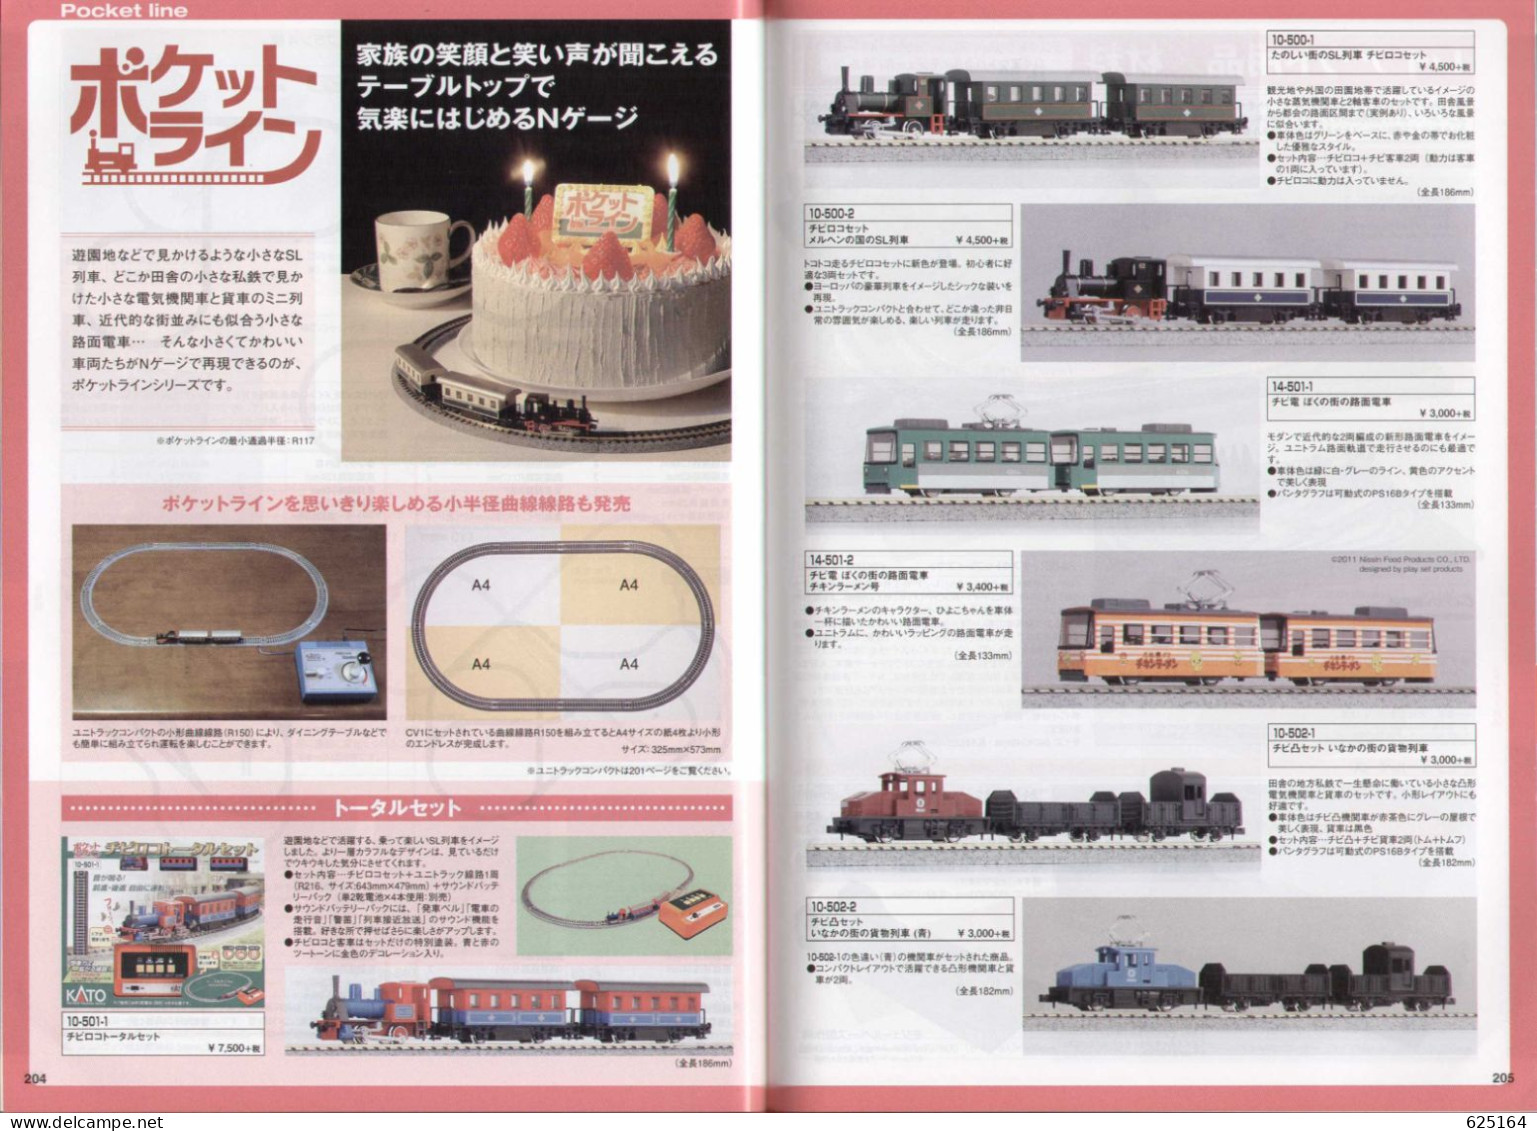 catalogue KATO 2015 50° PRECISION RAILROAD MODELS - HO 1:87 - N 1:160 - en japonais avec quelques sous-titres anglais